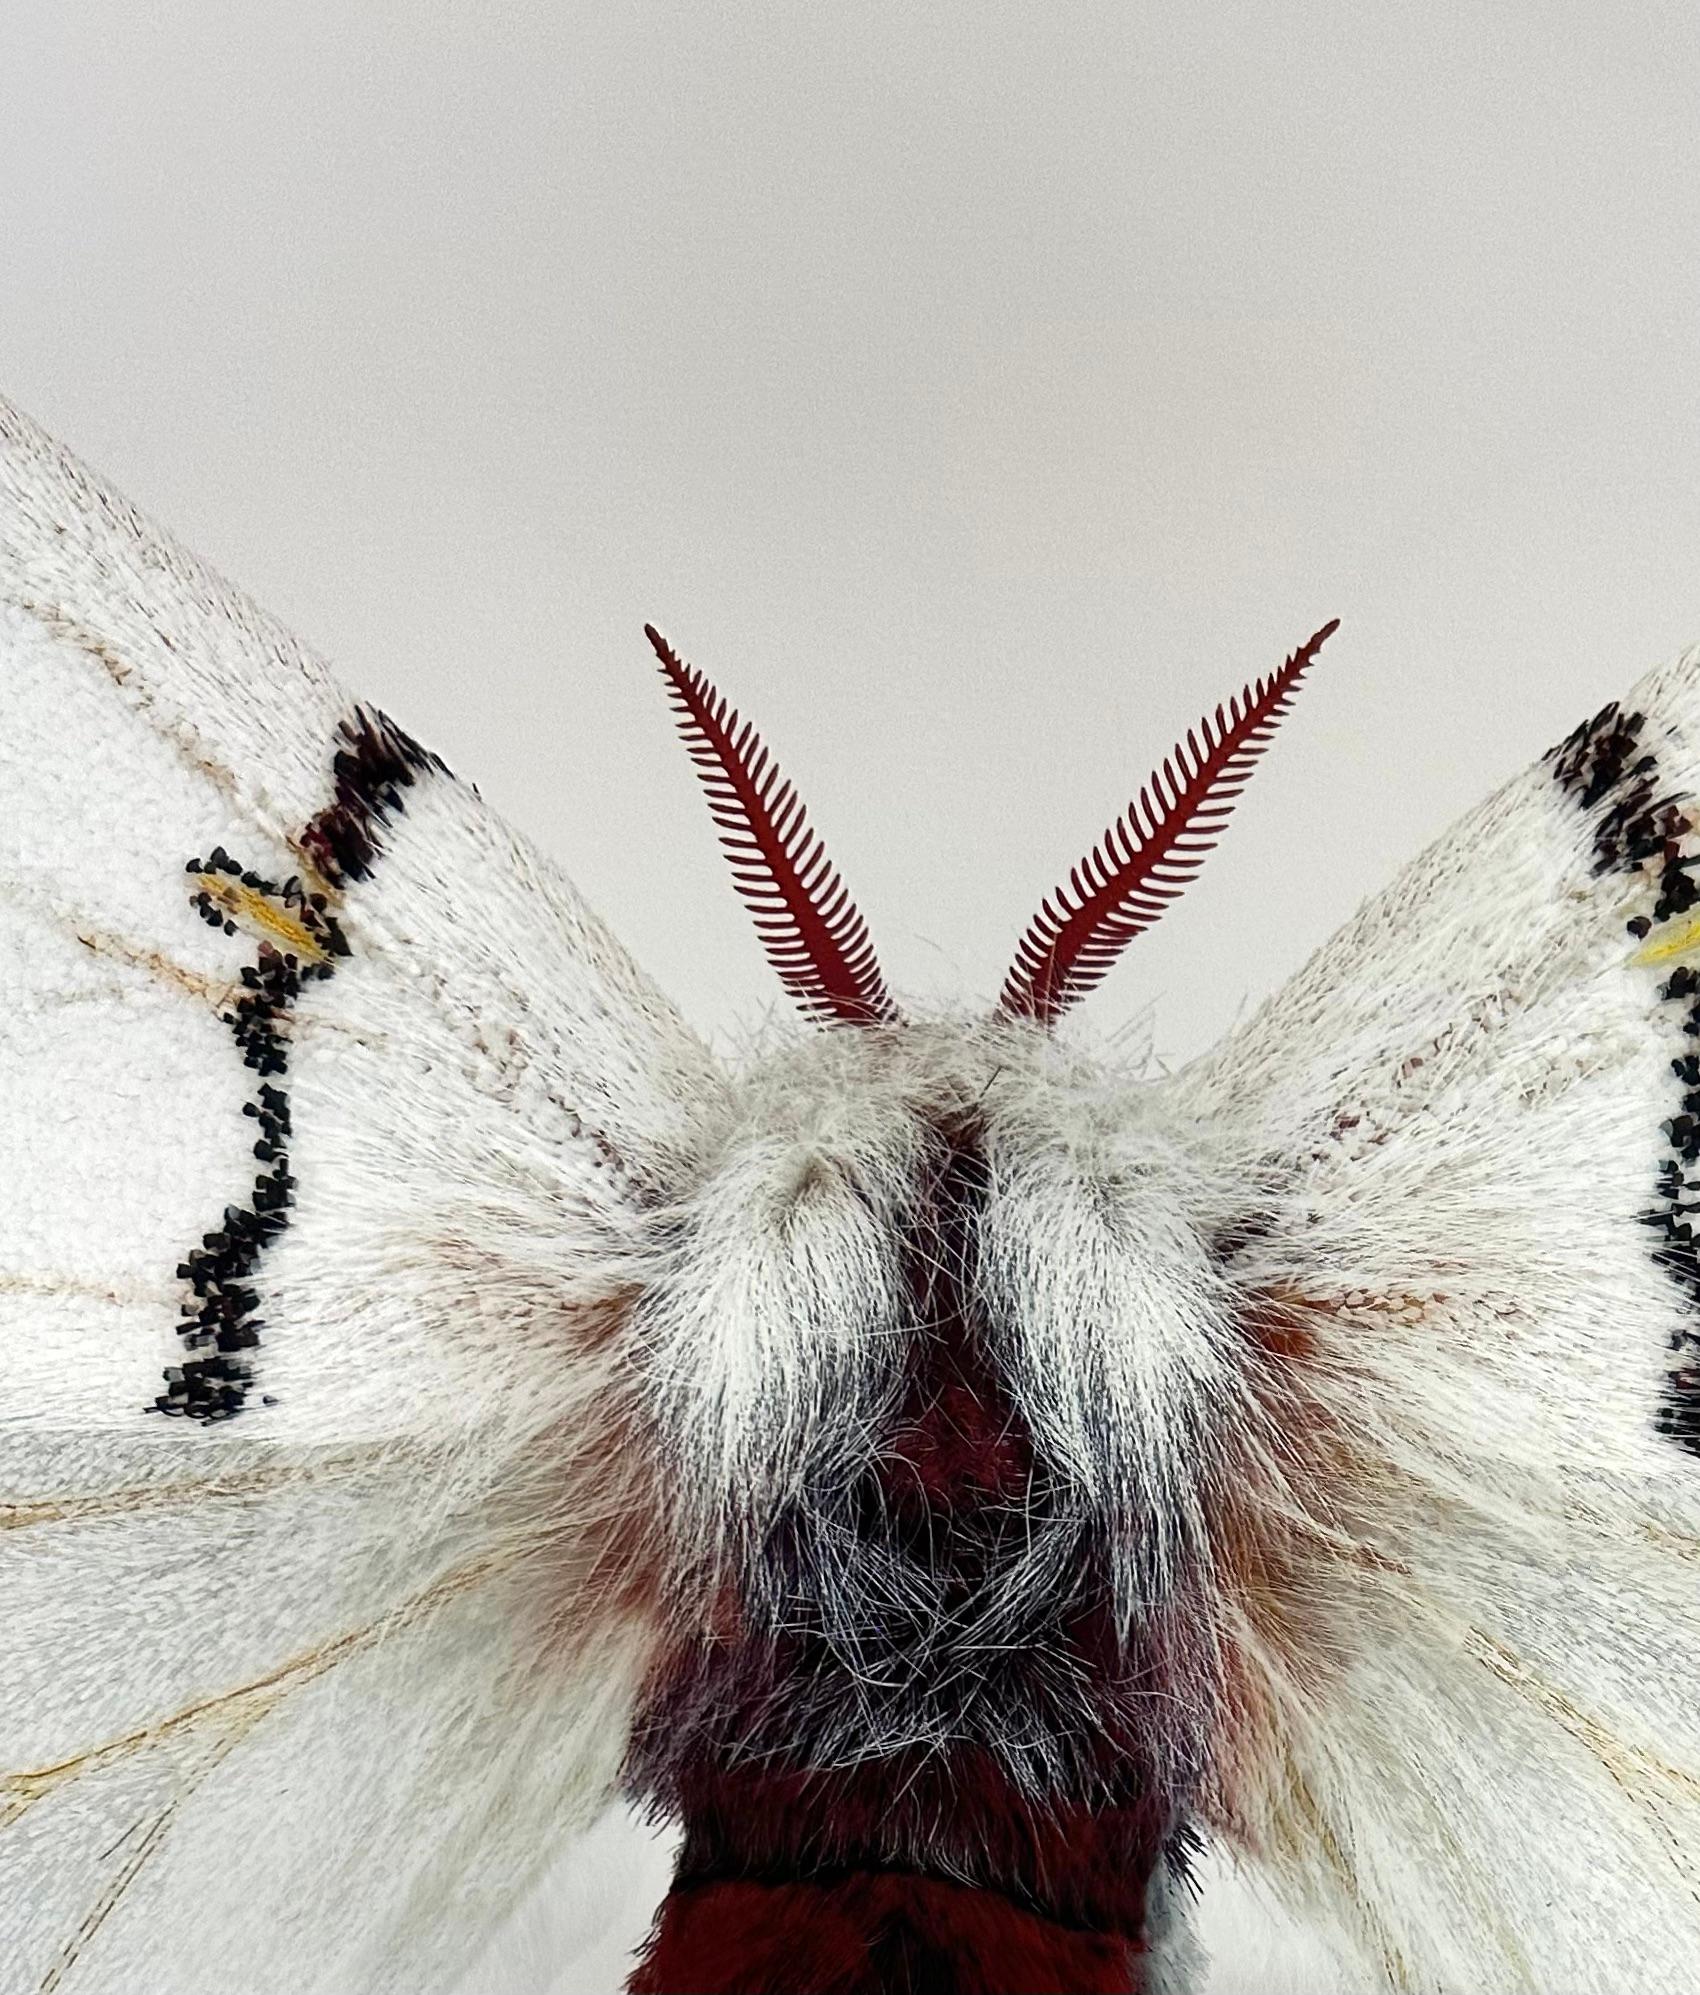 Dans cette impression pigmentaire d'archives hyper-détaillée sur papier aquarelle, un papillon de nuit blanc avec des rayures noires et des marques circulaires jaunes sur ses ailes se détache de façon spectaculaire sur un fond blanc uni. 

Le prix